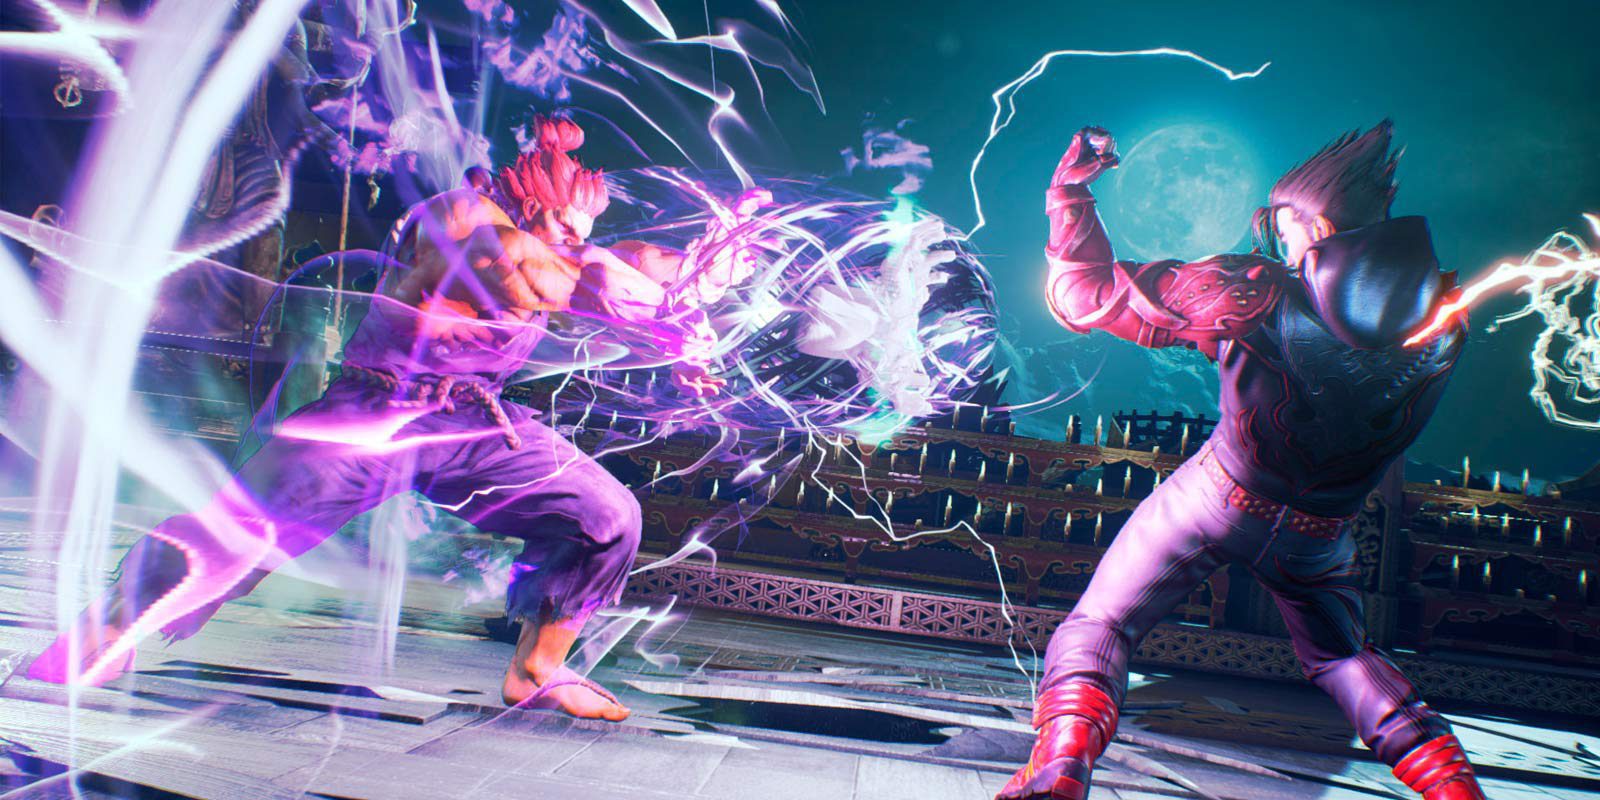 Noctis de 'Final Fantasy XV' llegará a 'Tekken 7' como personaje jugable en 2018